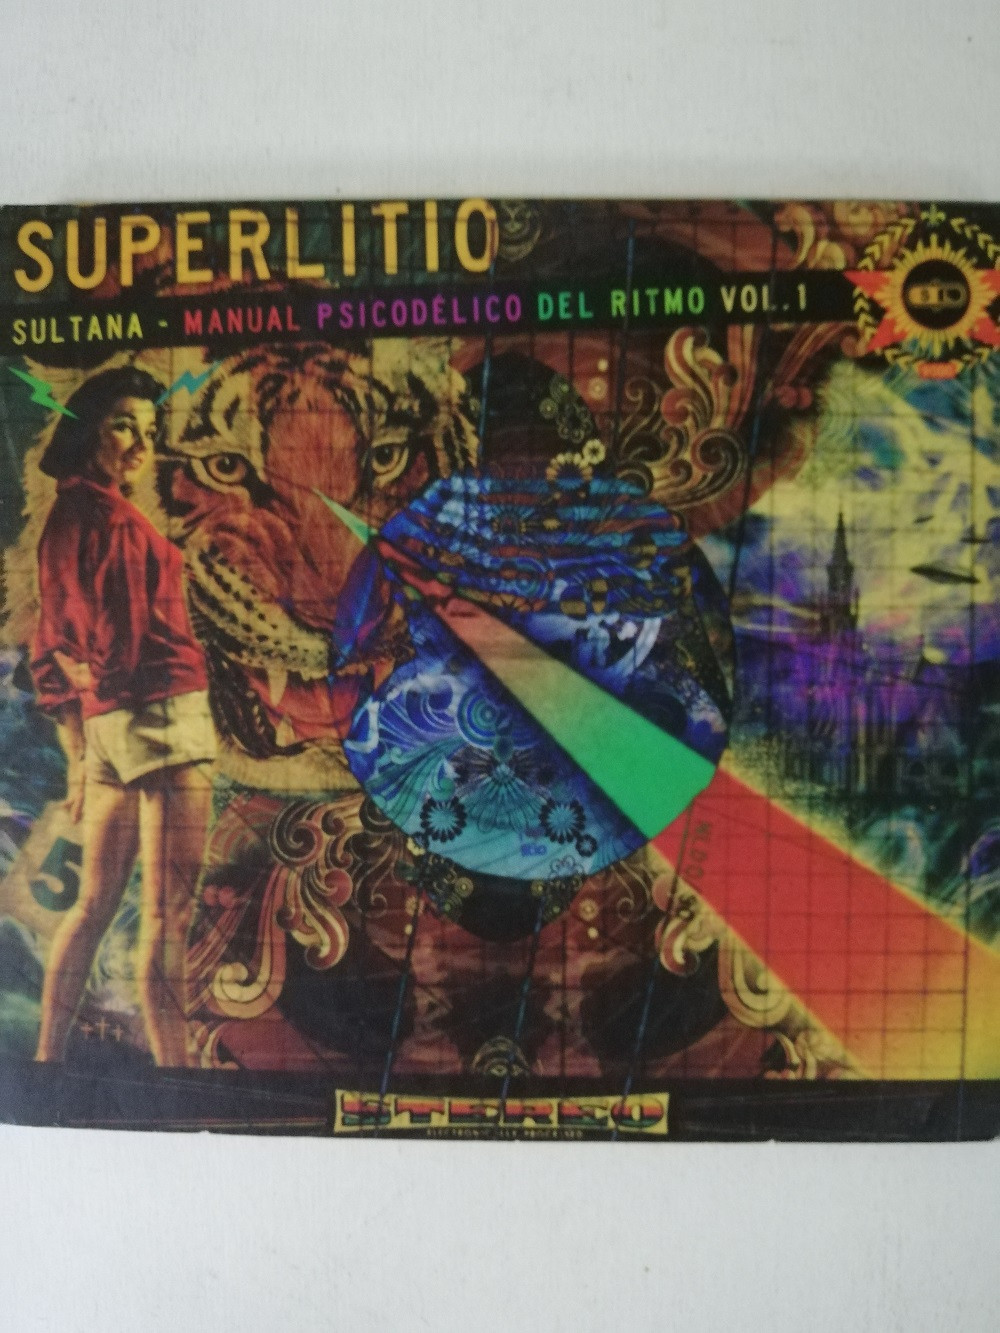 Imagen CD SUPERLITIO - SULTANA, MANUAL PSICODÉLICO DEL RITMO VOL. 1